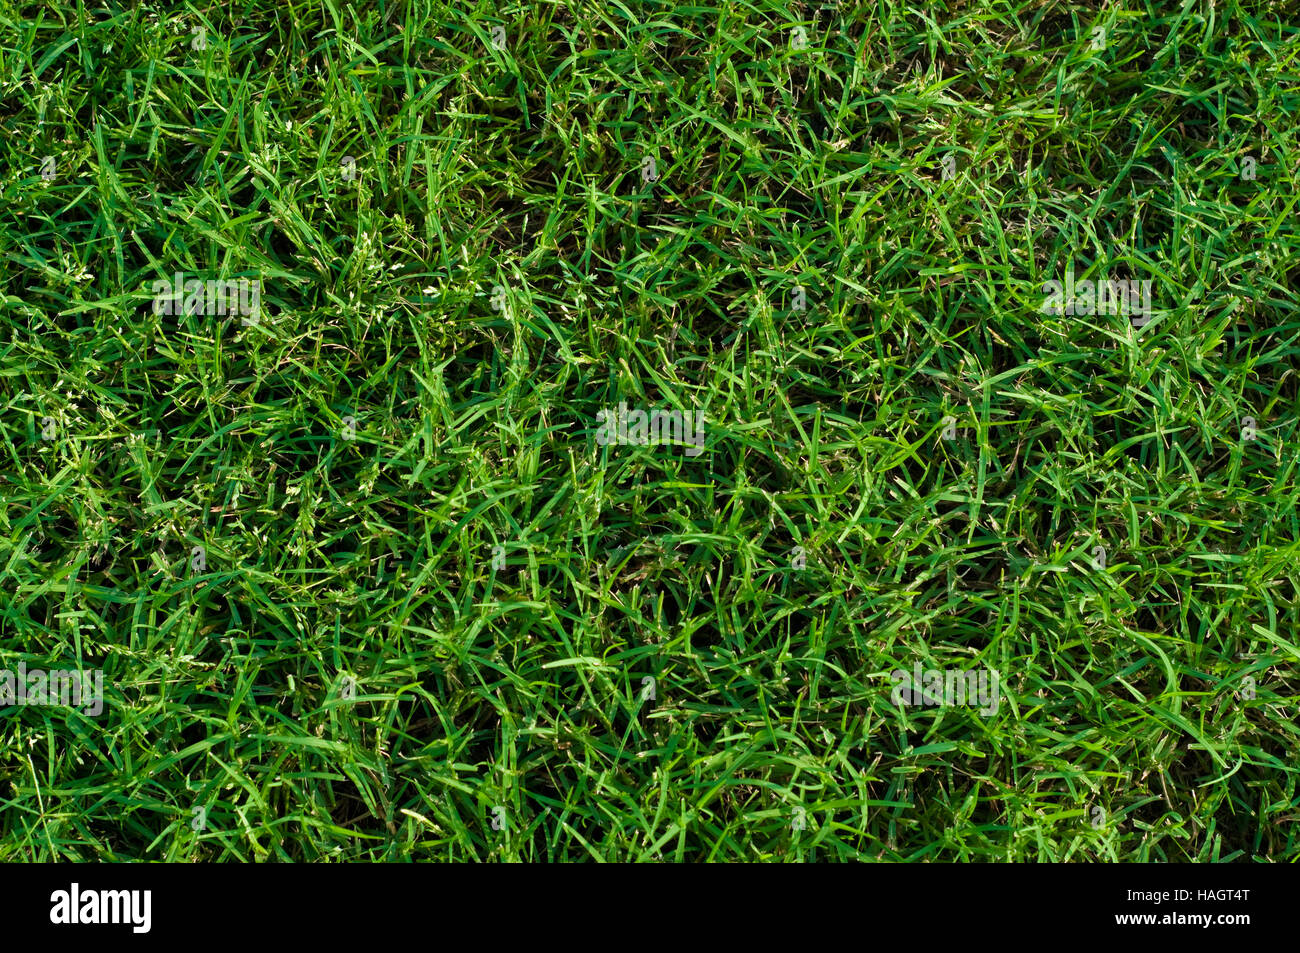 Hintergrund grün angelegten Bermudagras hautnah. Stockfoto